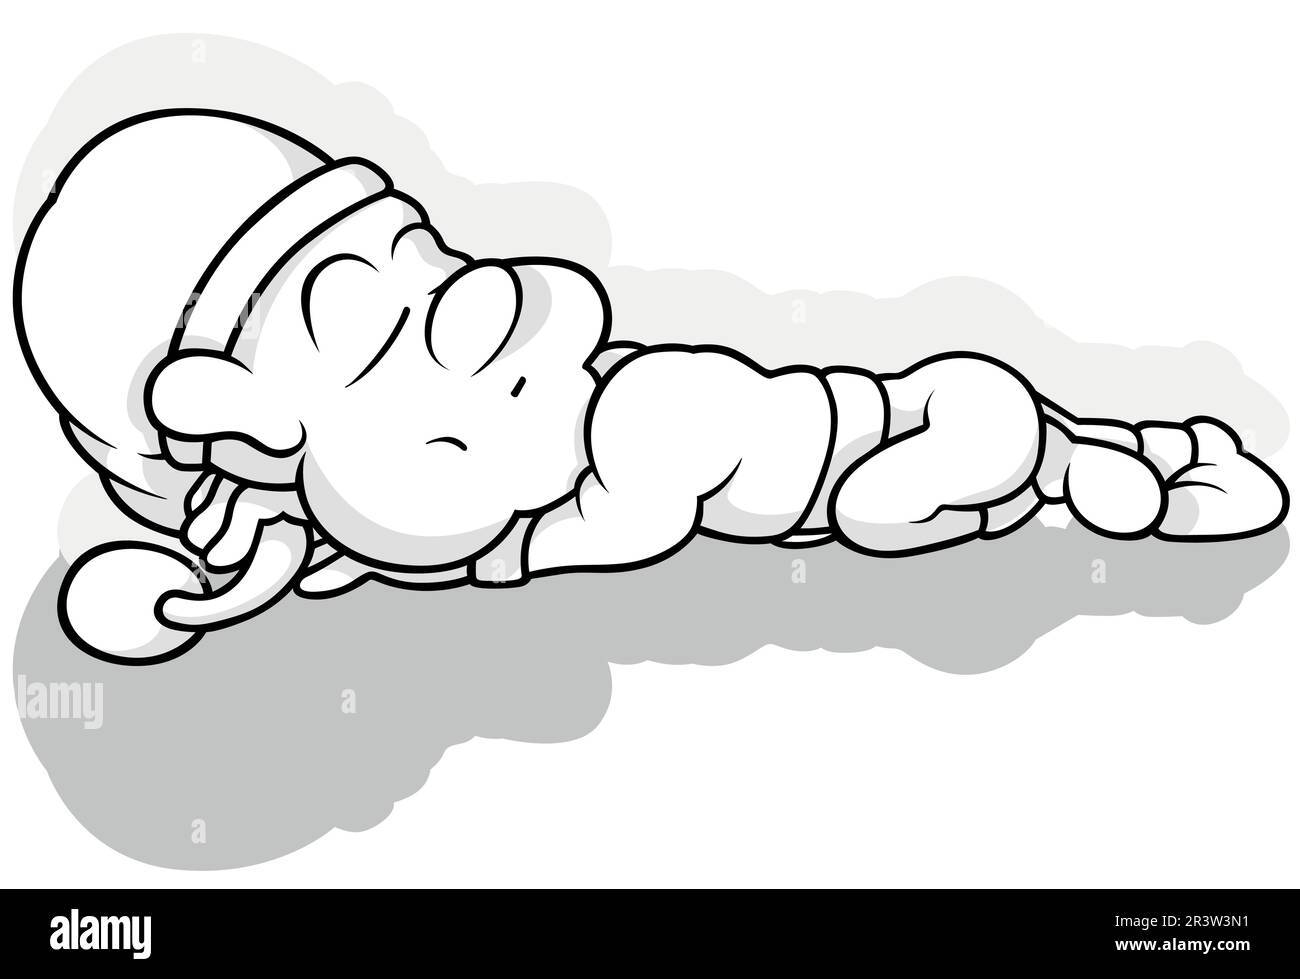 Disegno di un Leprechaun che dorme a terra Illustrazione Vettoriale